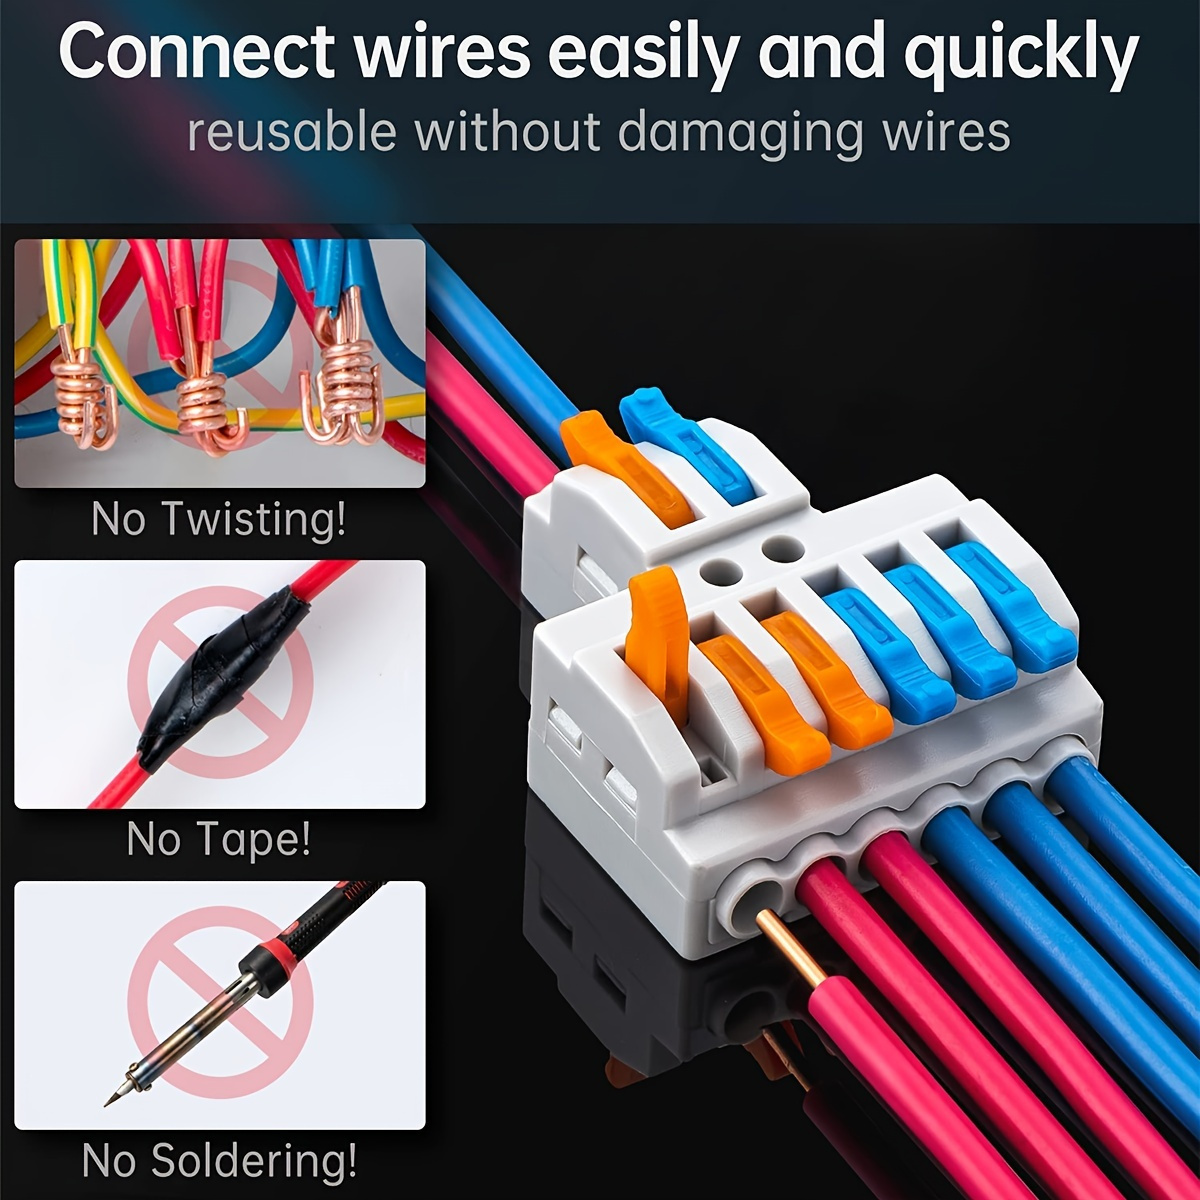 40 Piezas Conectores Cables Electricos Rapidos Kit, PCT-211 Clemas